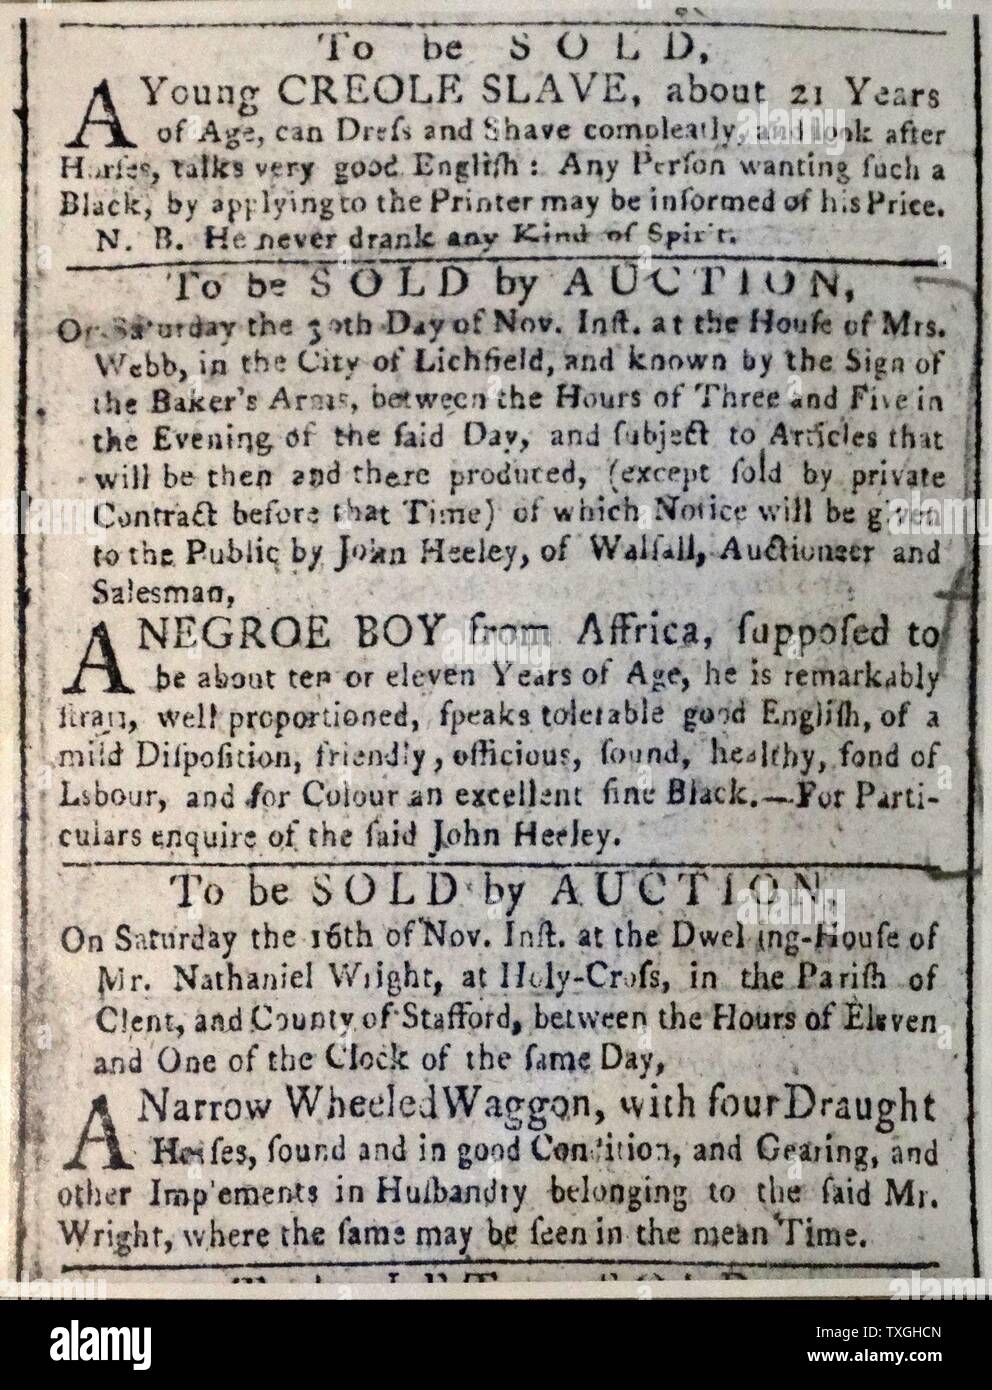 Werbung für den Verkauf eines Sklaven. Litchfield, England. Vom 18. Jahrhundert Stockfoto